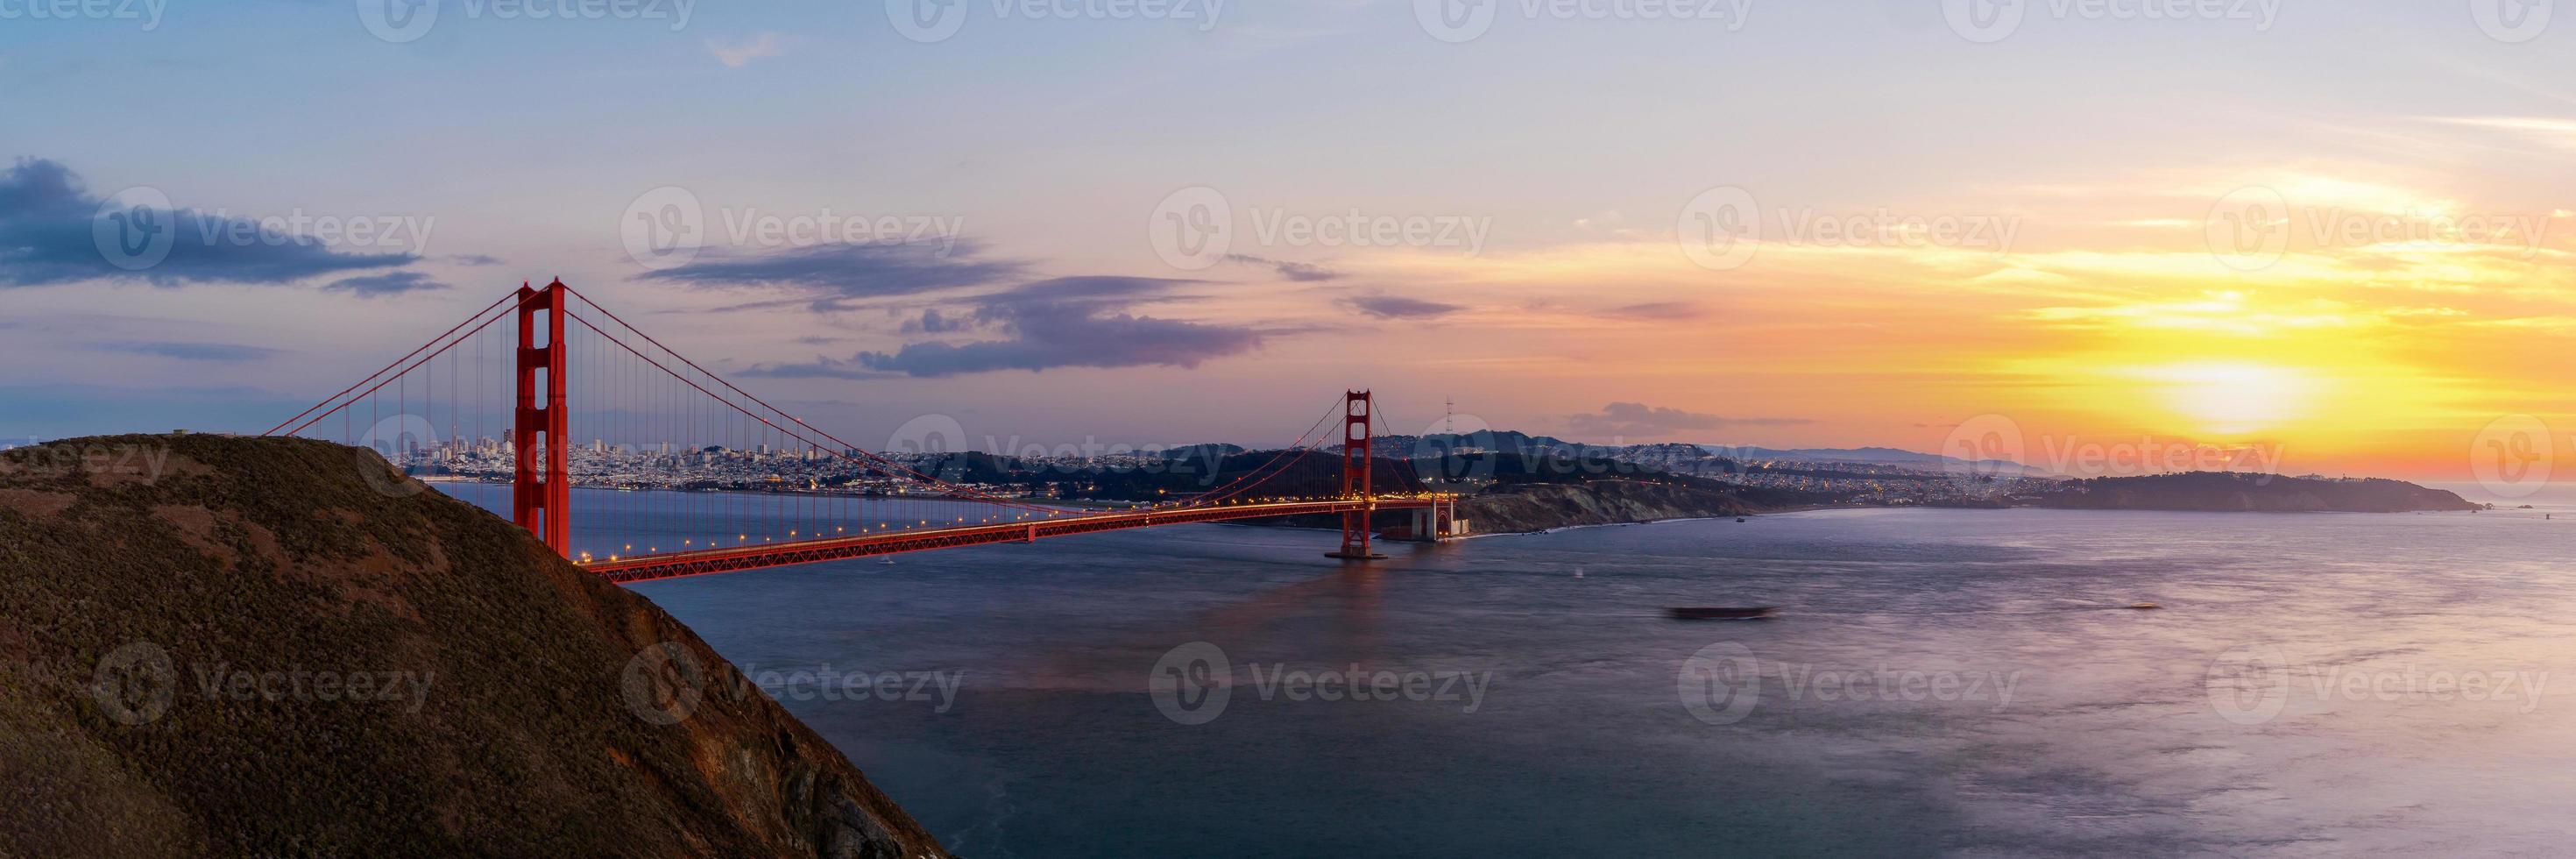 Panoramablick der Golden Gate Bridge in der Dämmerungszeit foto